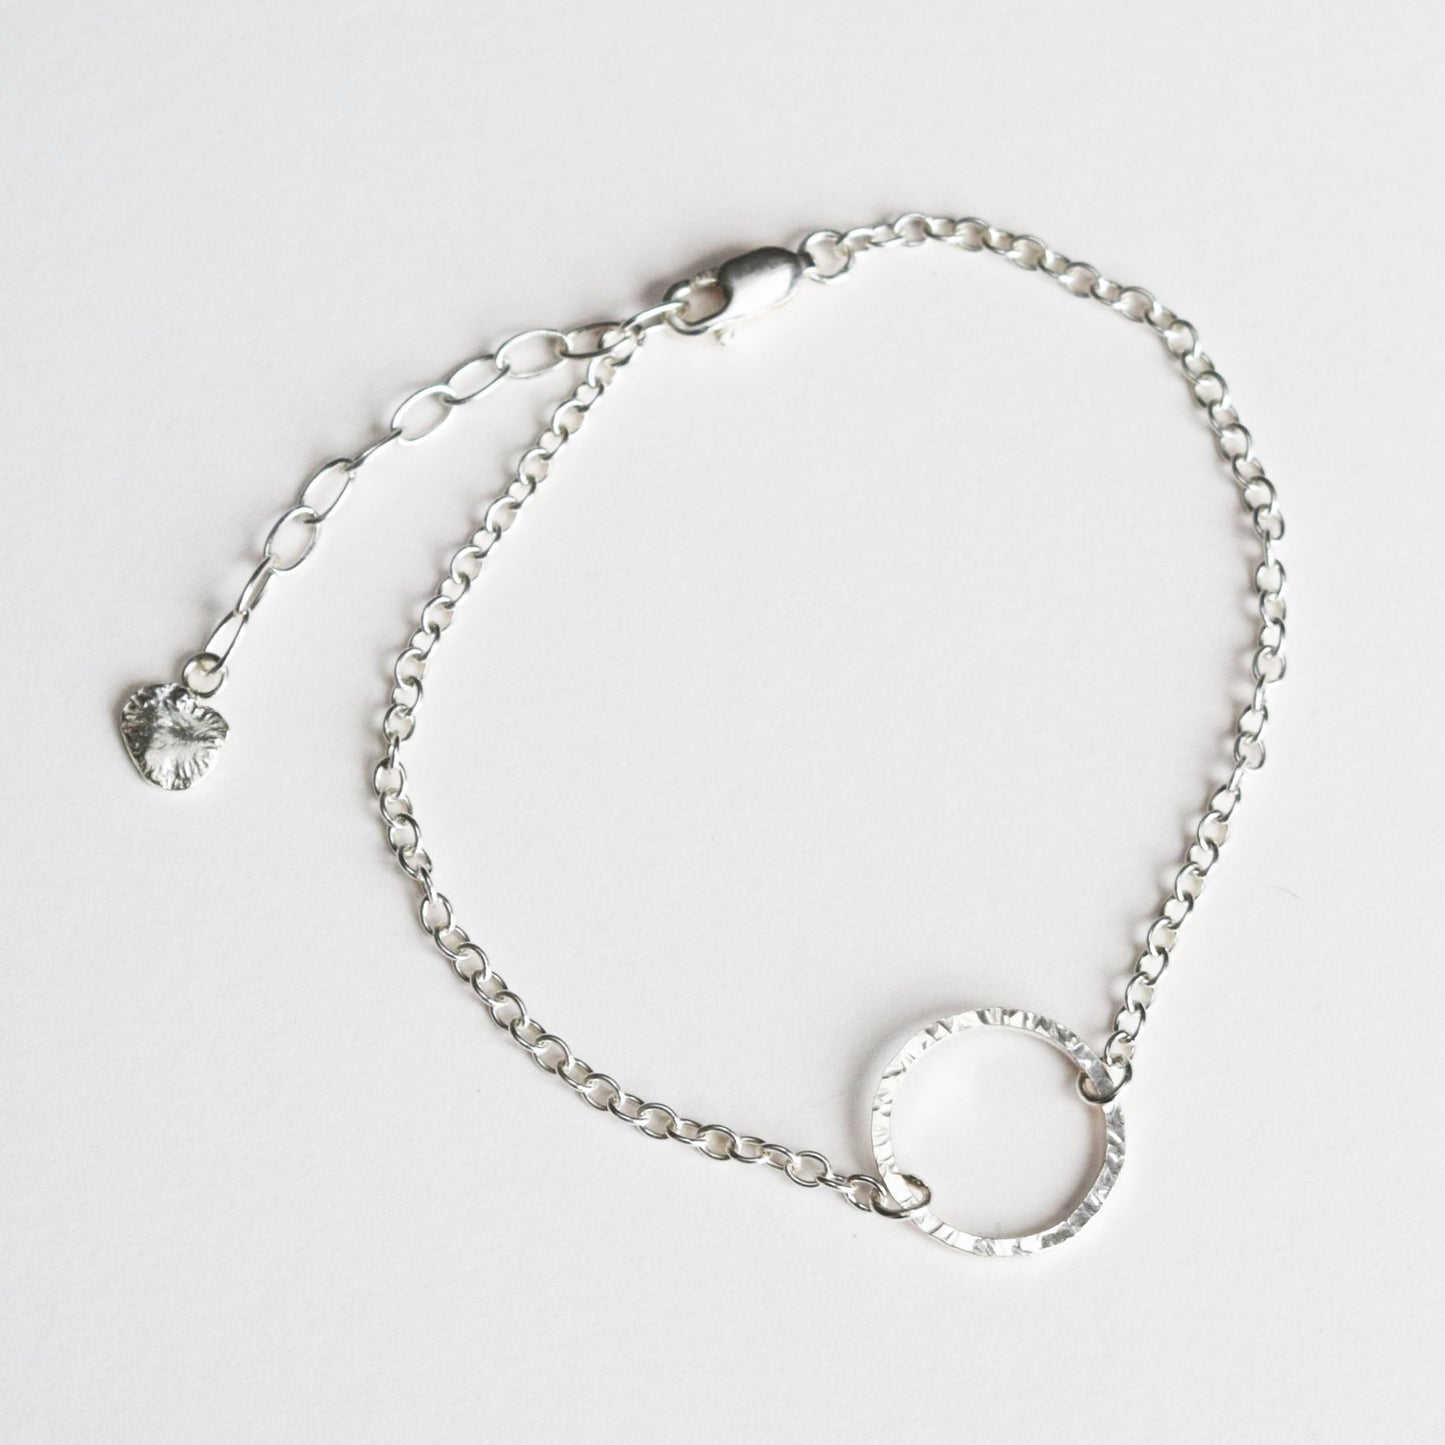 Circle bracelet on white background